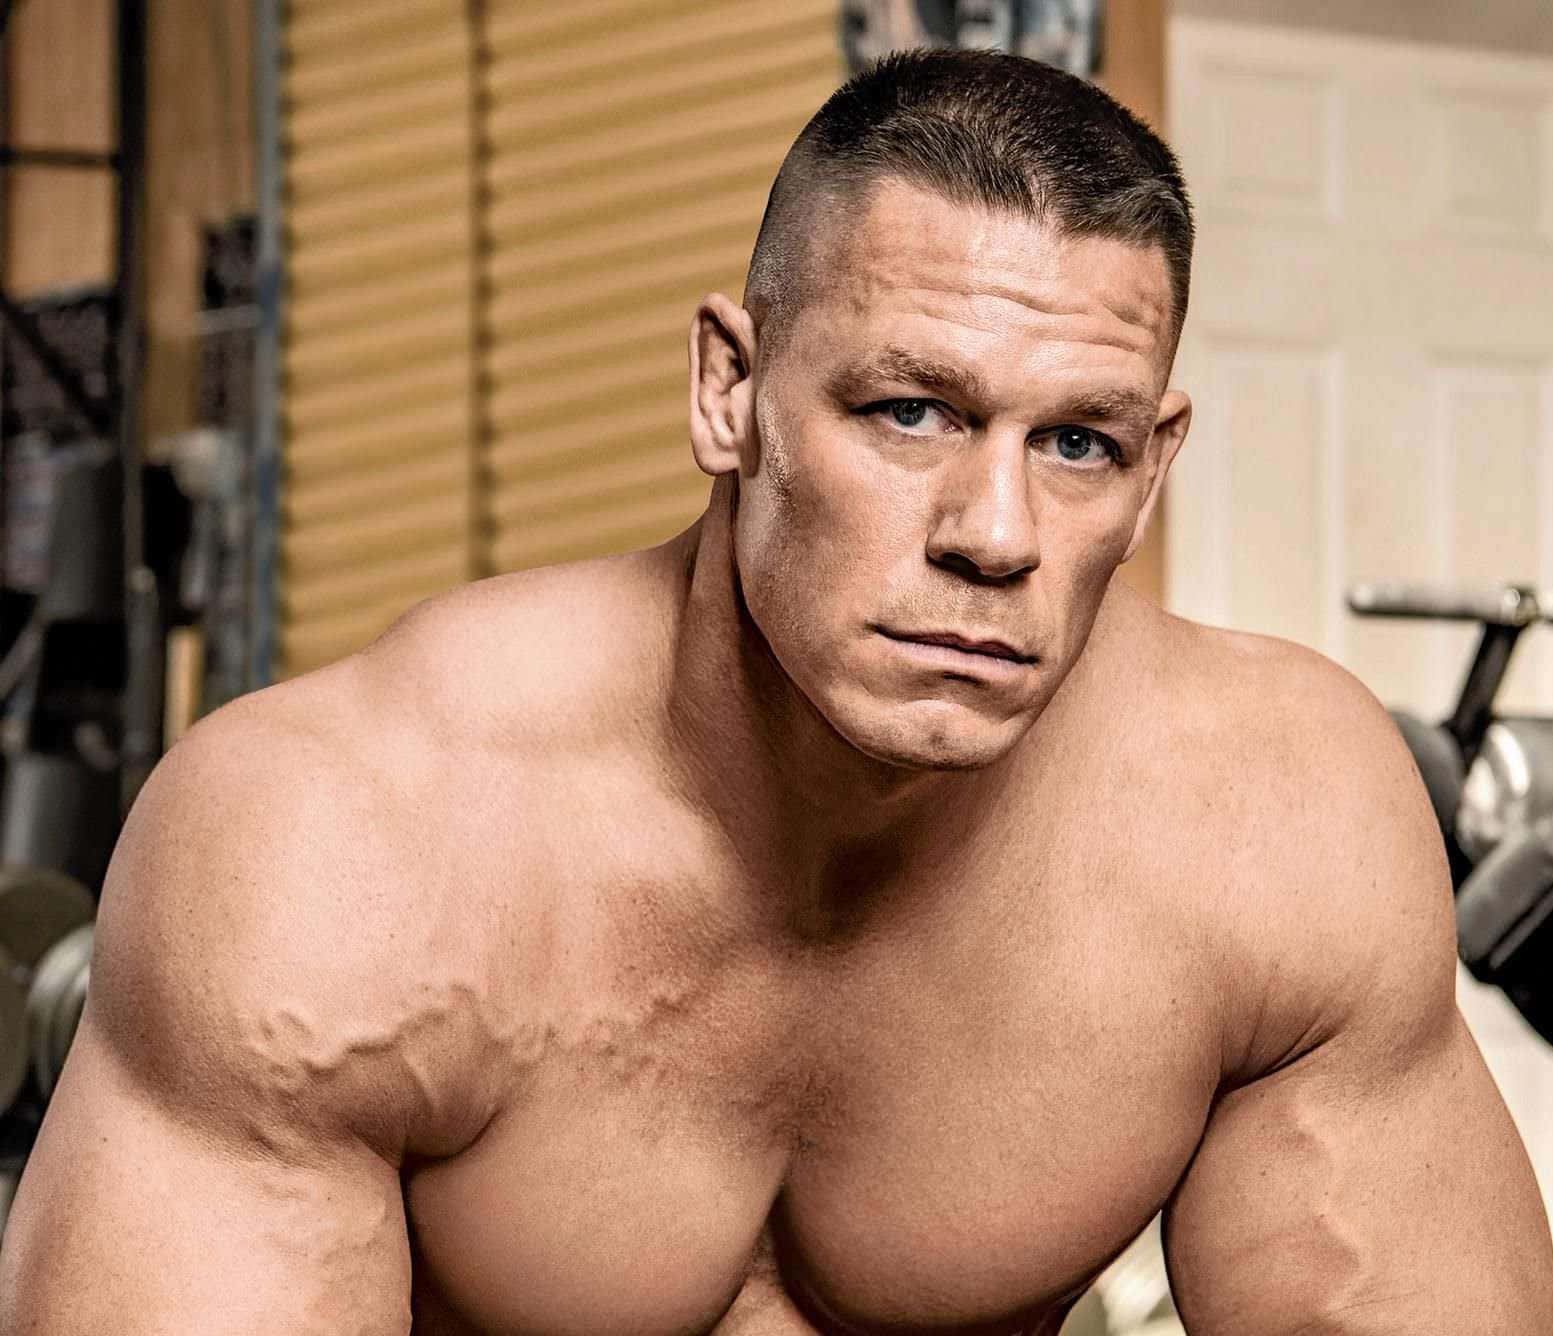 John Cena flexing muscles during a WWE match